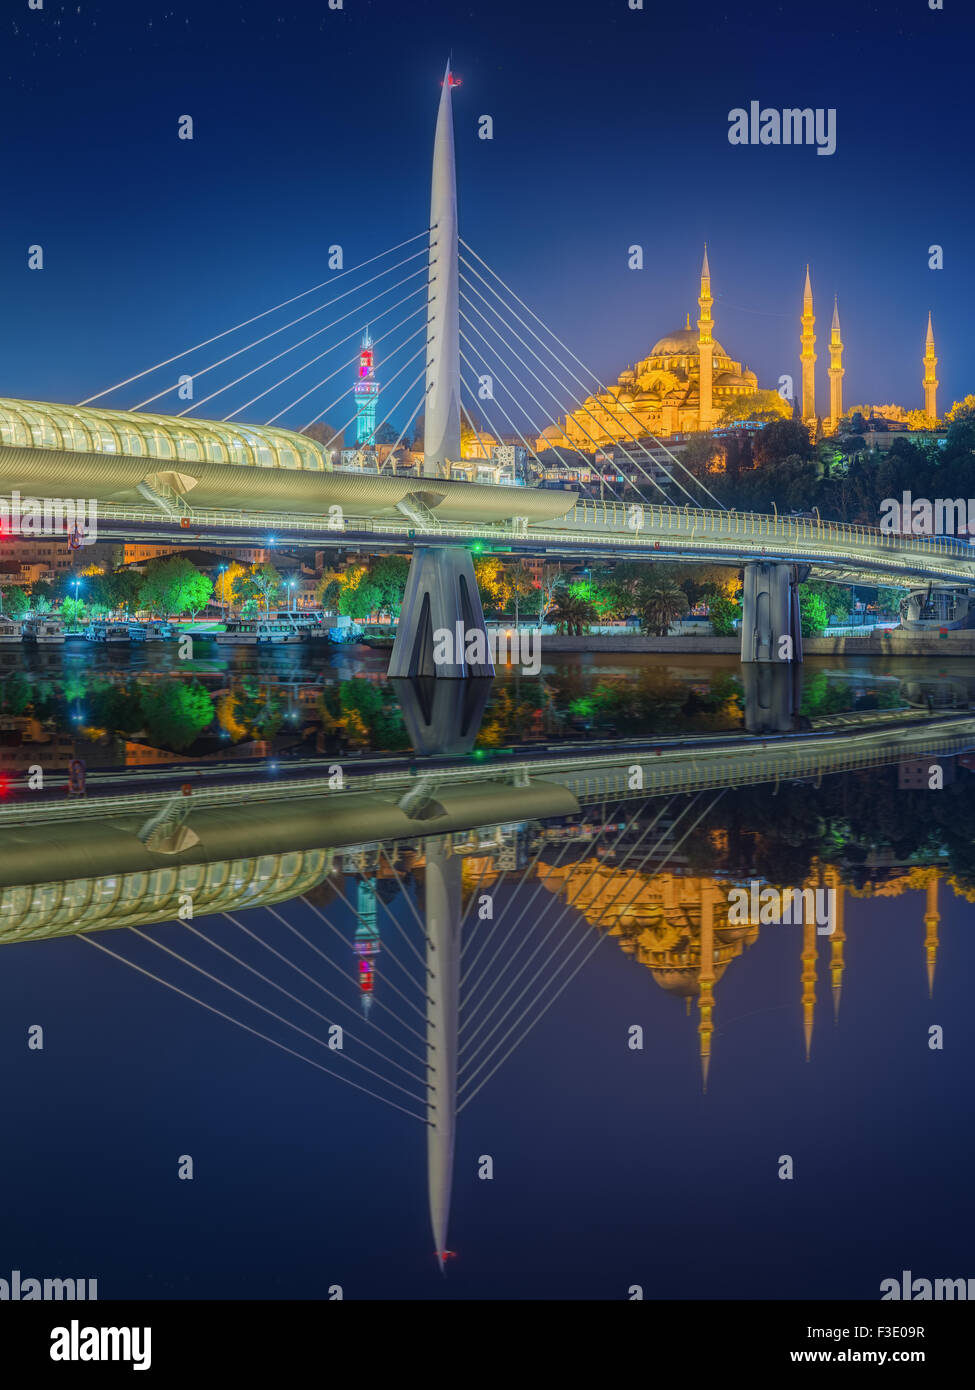 Atatürk-Brücke, u-Bahn-Brücke und golden Horn in der Nacht - Istanbul, Türkei Stockfoto